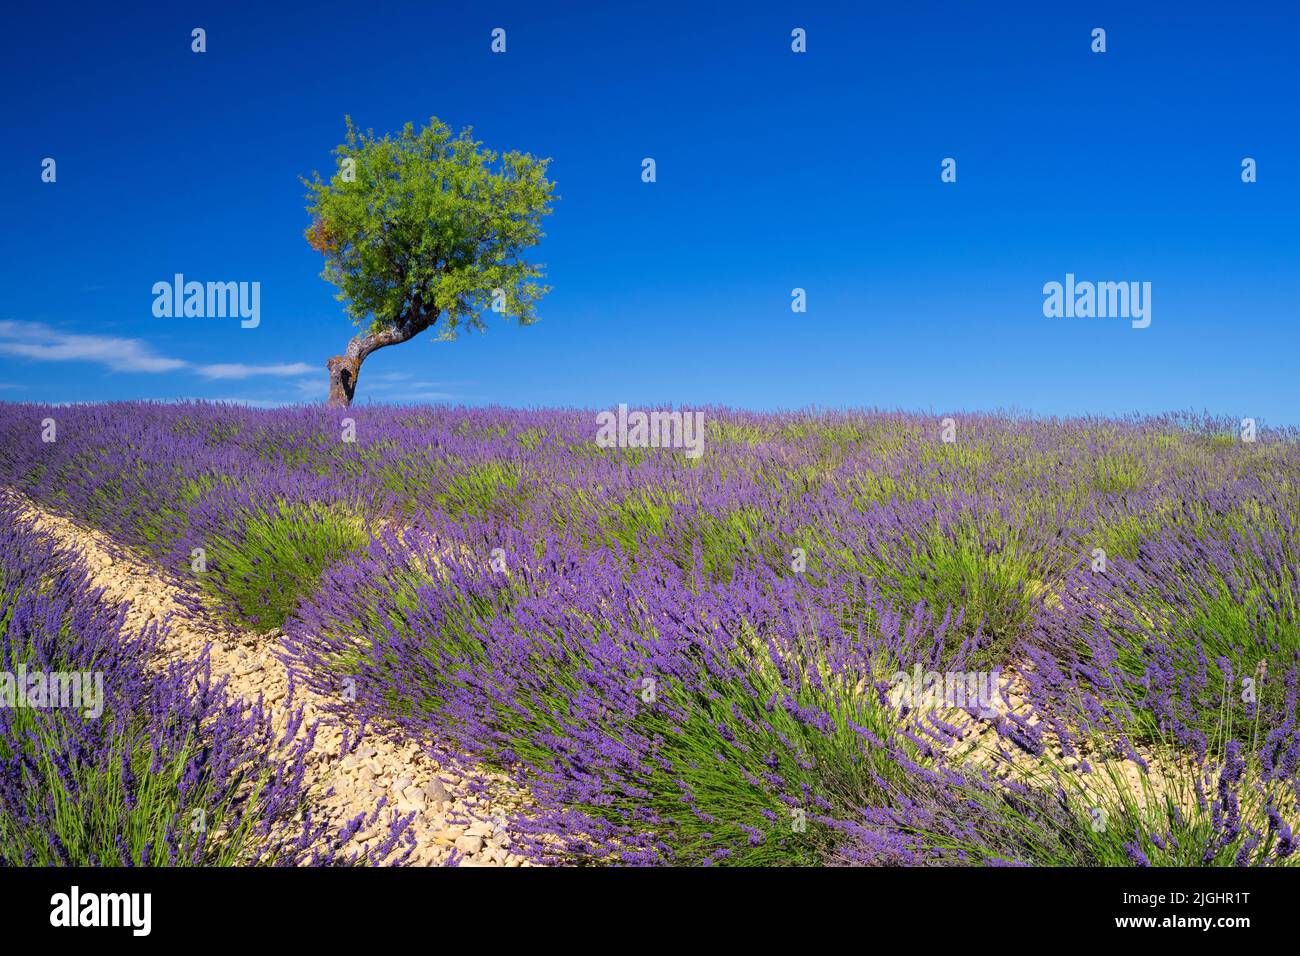 Vista del campo de lavanda con un árbol en verano, Valensole, Francia Foto de stock